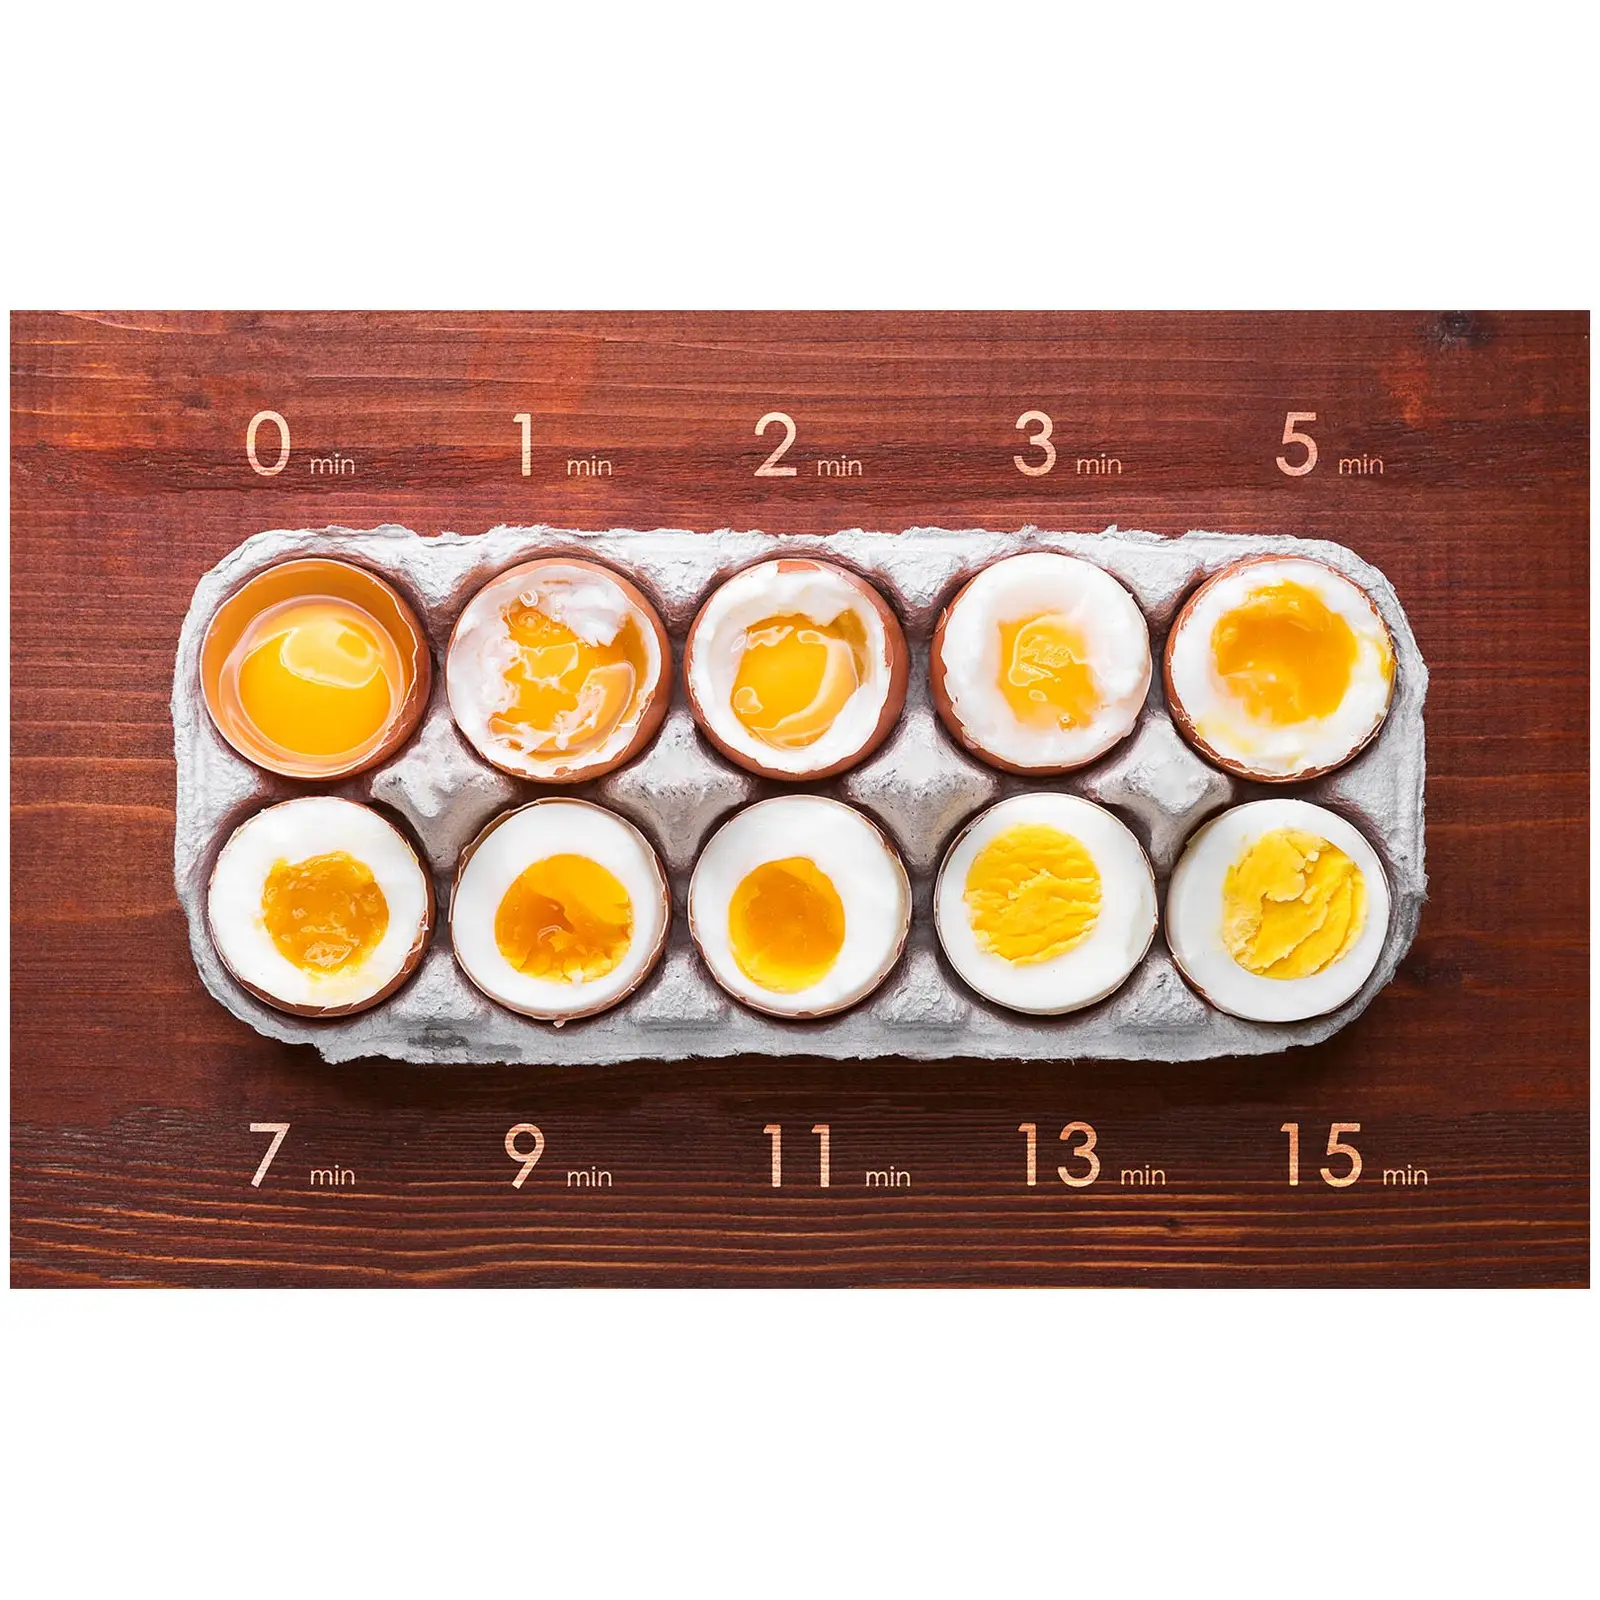 Eggkoker - 12 egg